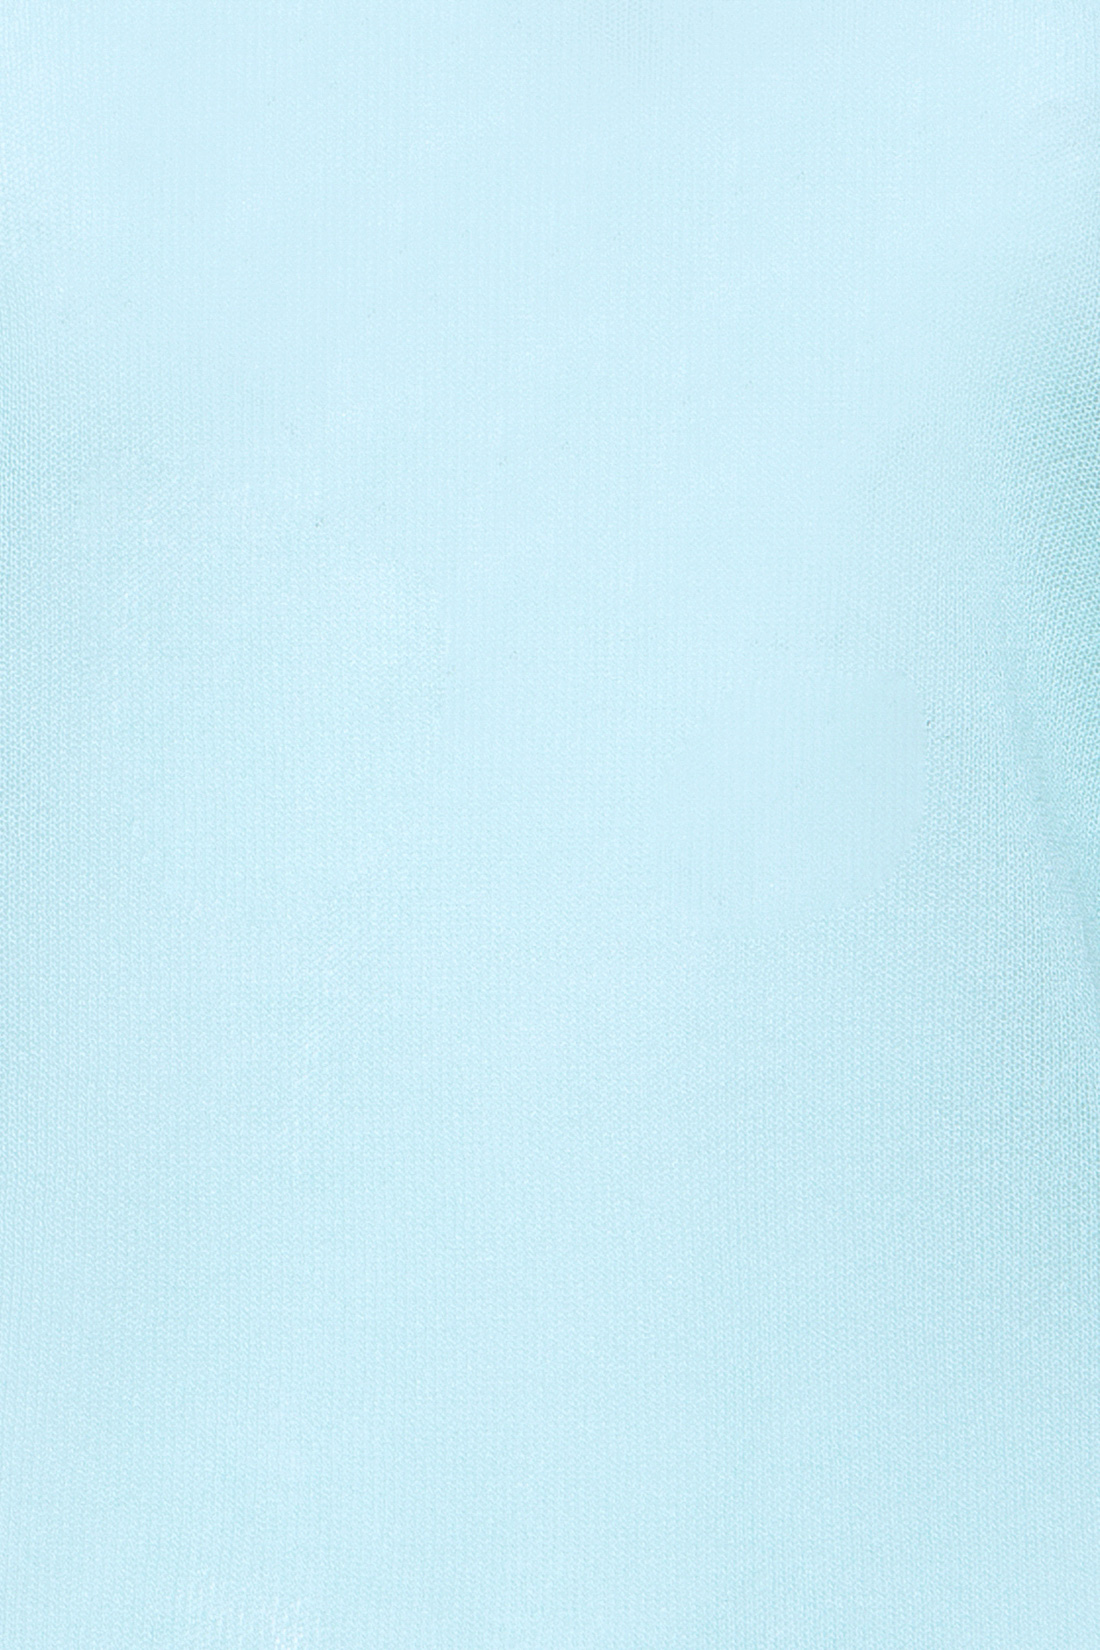 Джемпер с ажурными рукавами (арт. baon B137010), размер S, цвет голубой Джемпер с ажурными рукавами (арт. baon B137010) - фото 3